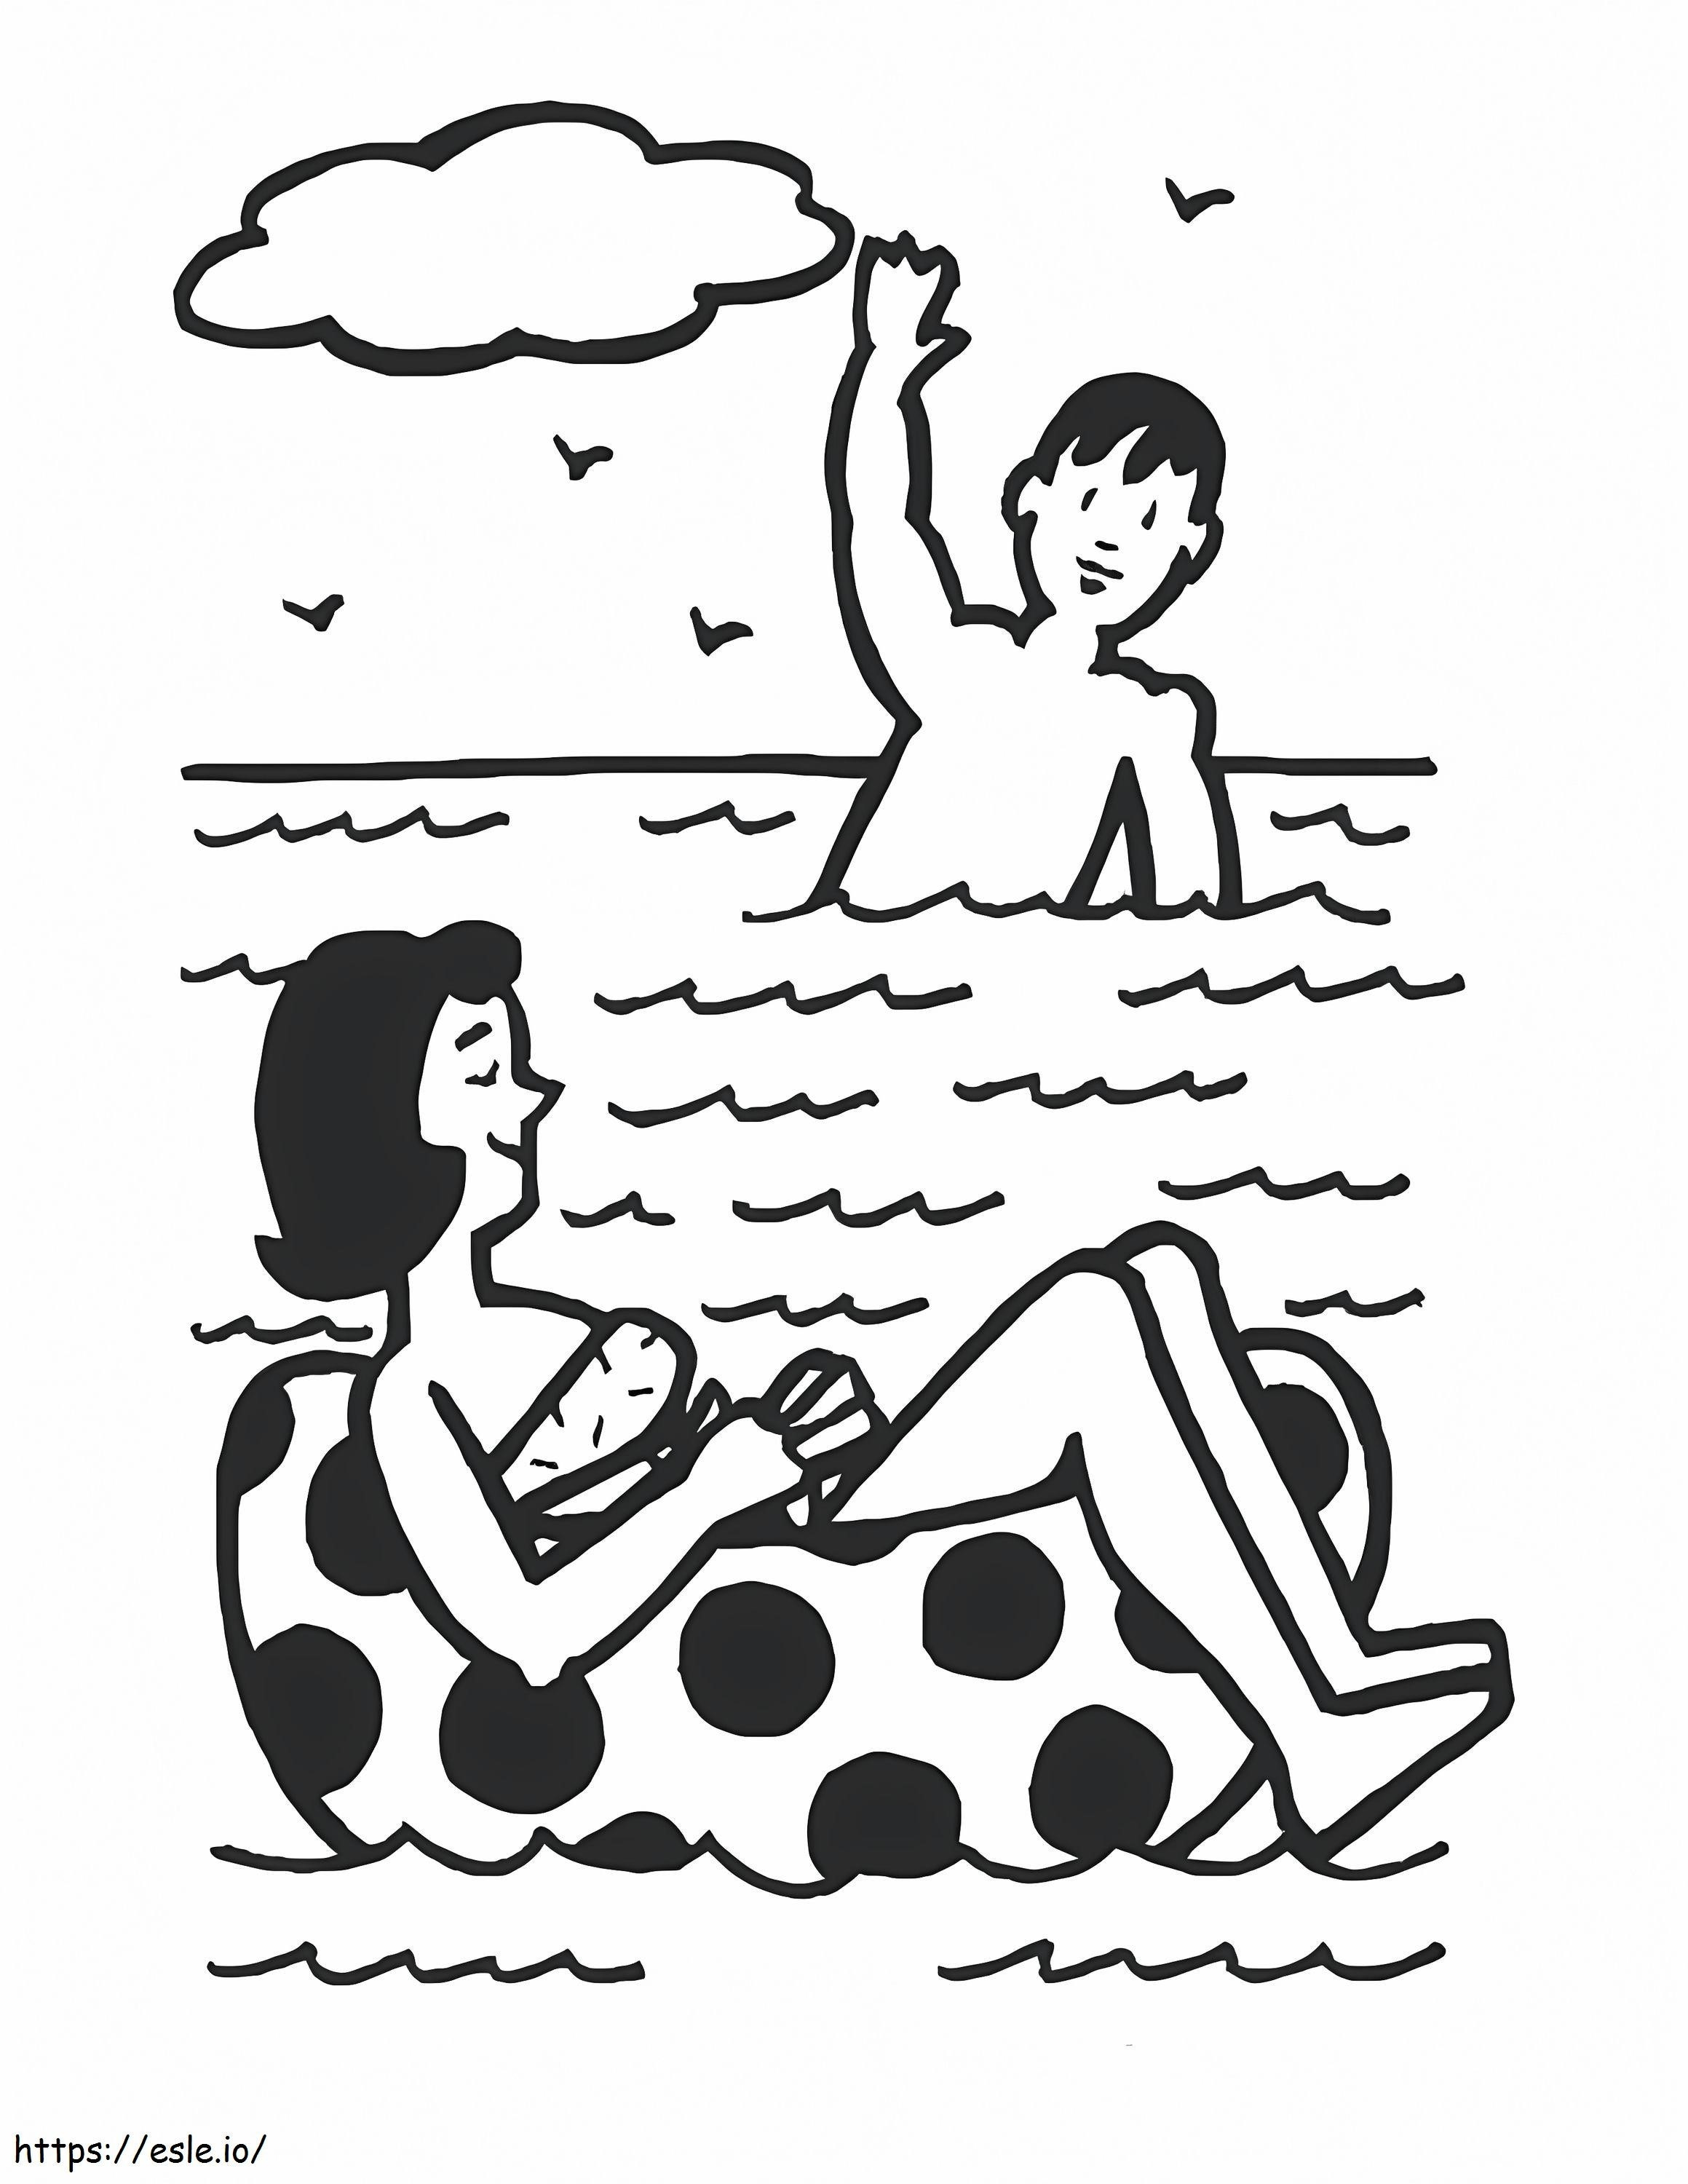 Dibujo de niño y niña nadando en la playa para colorear